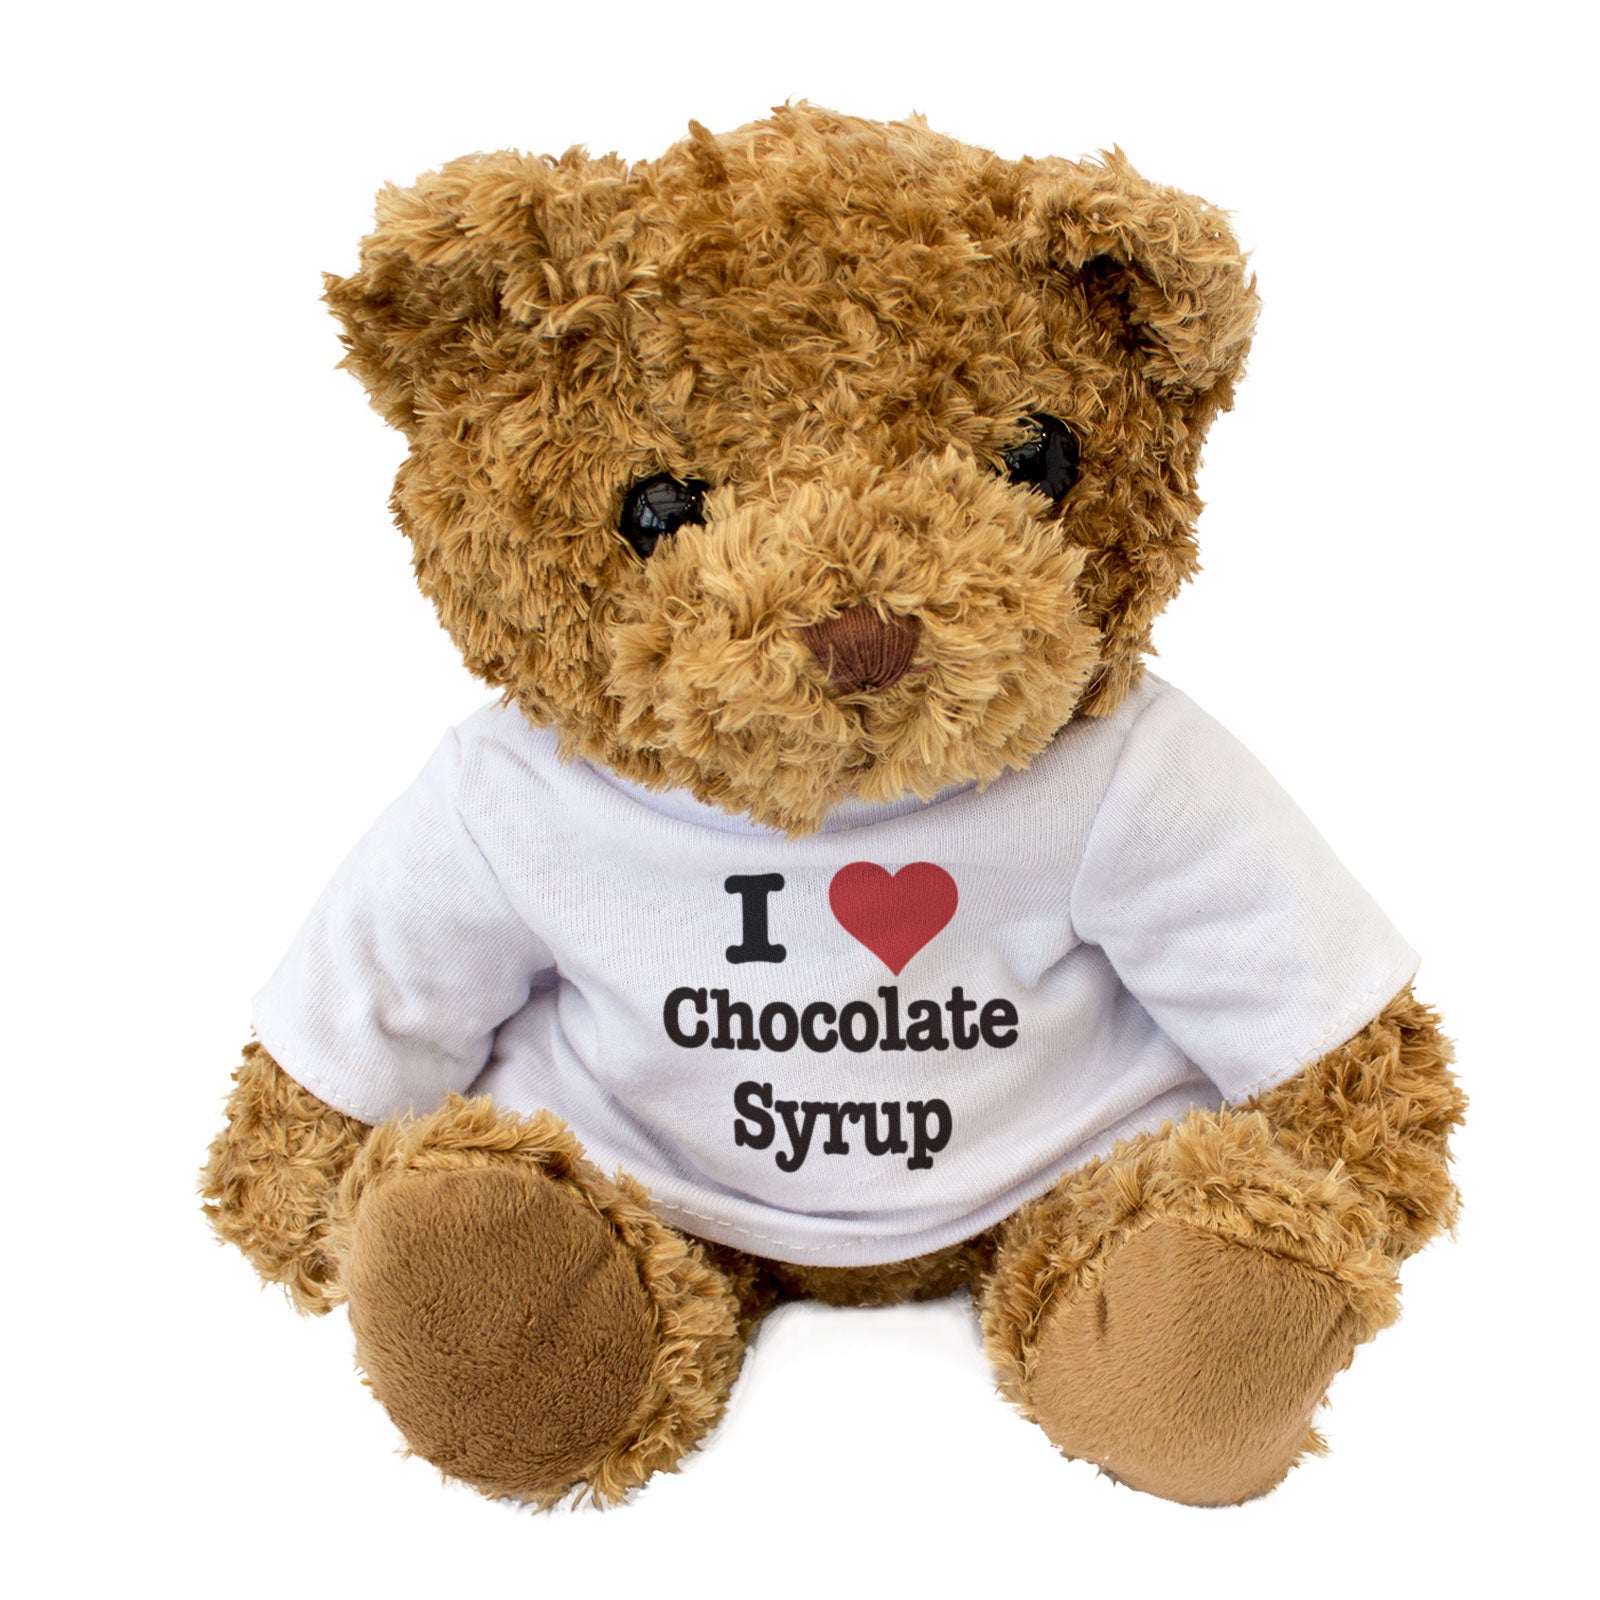 I Love Chocolate Syrup - Teddy Bear